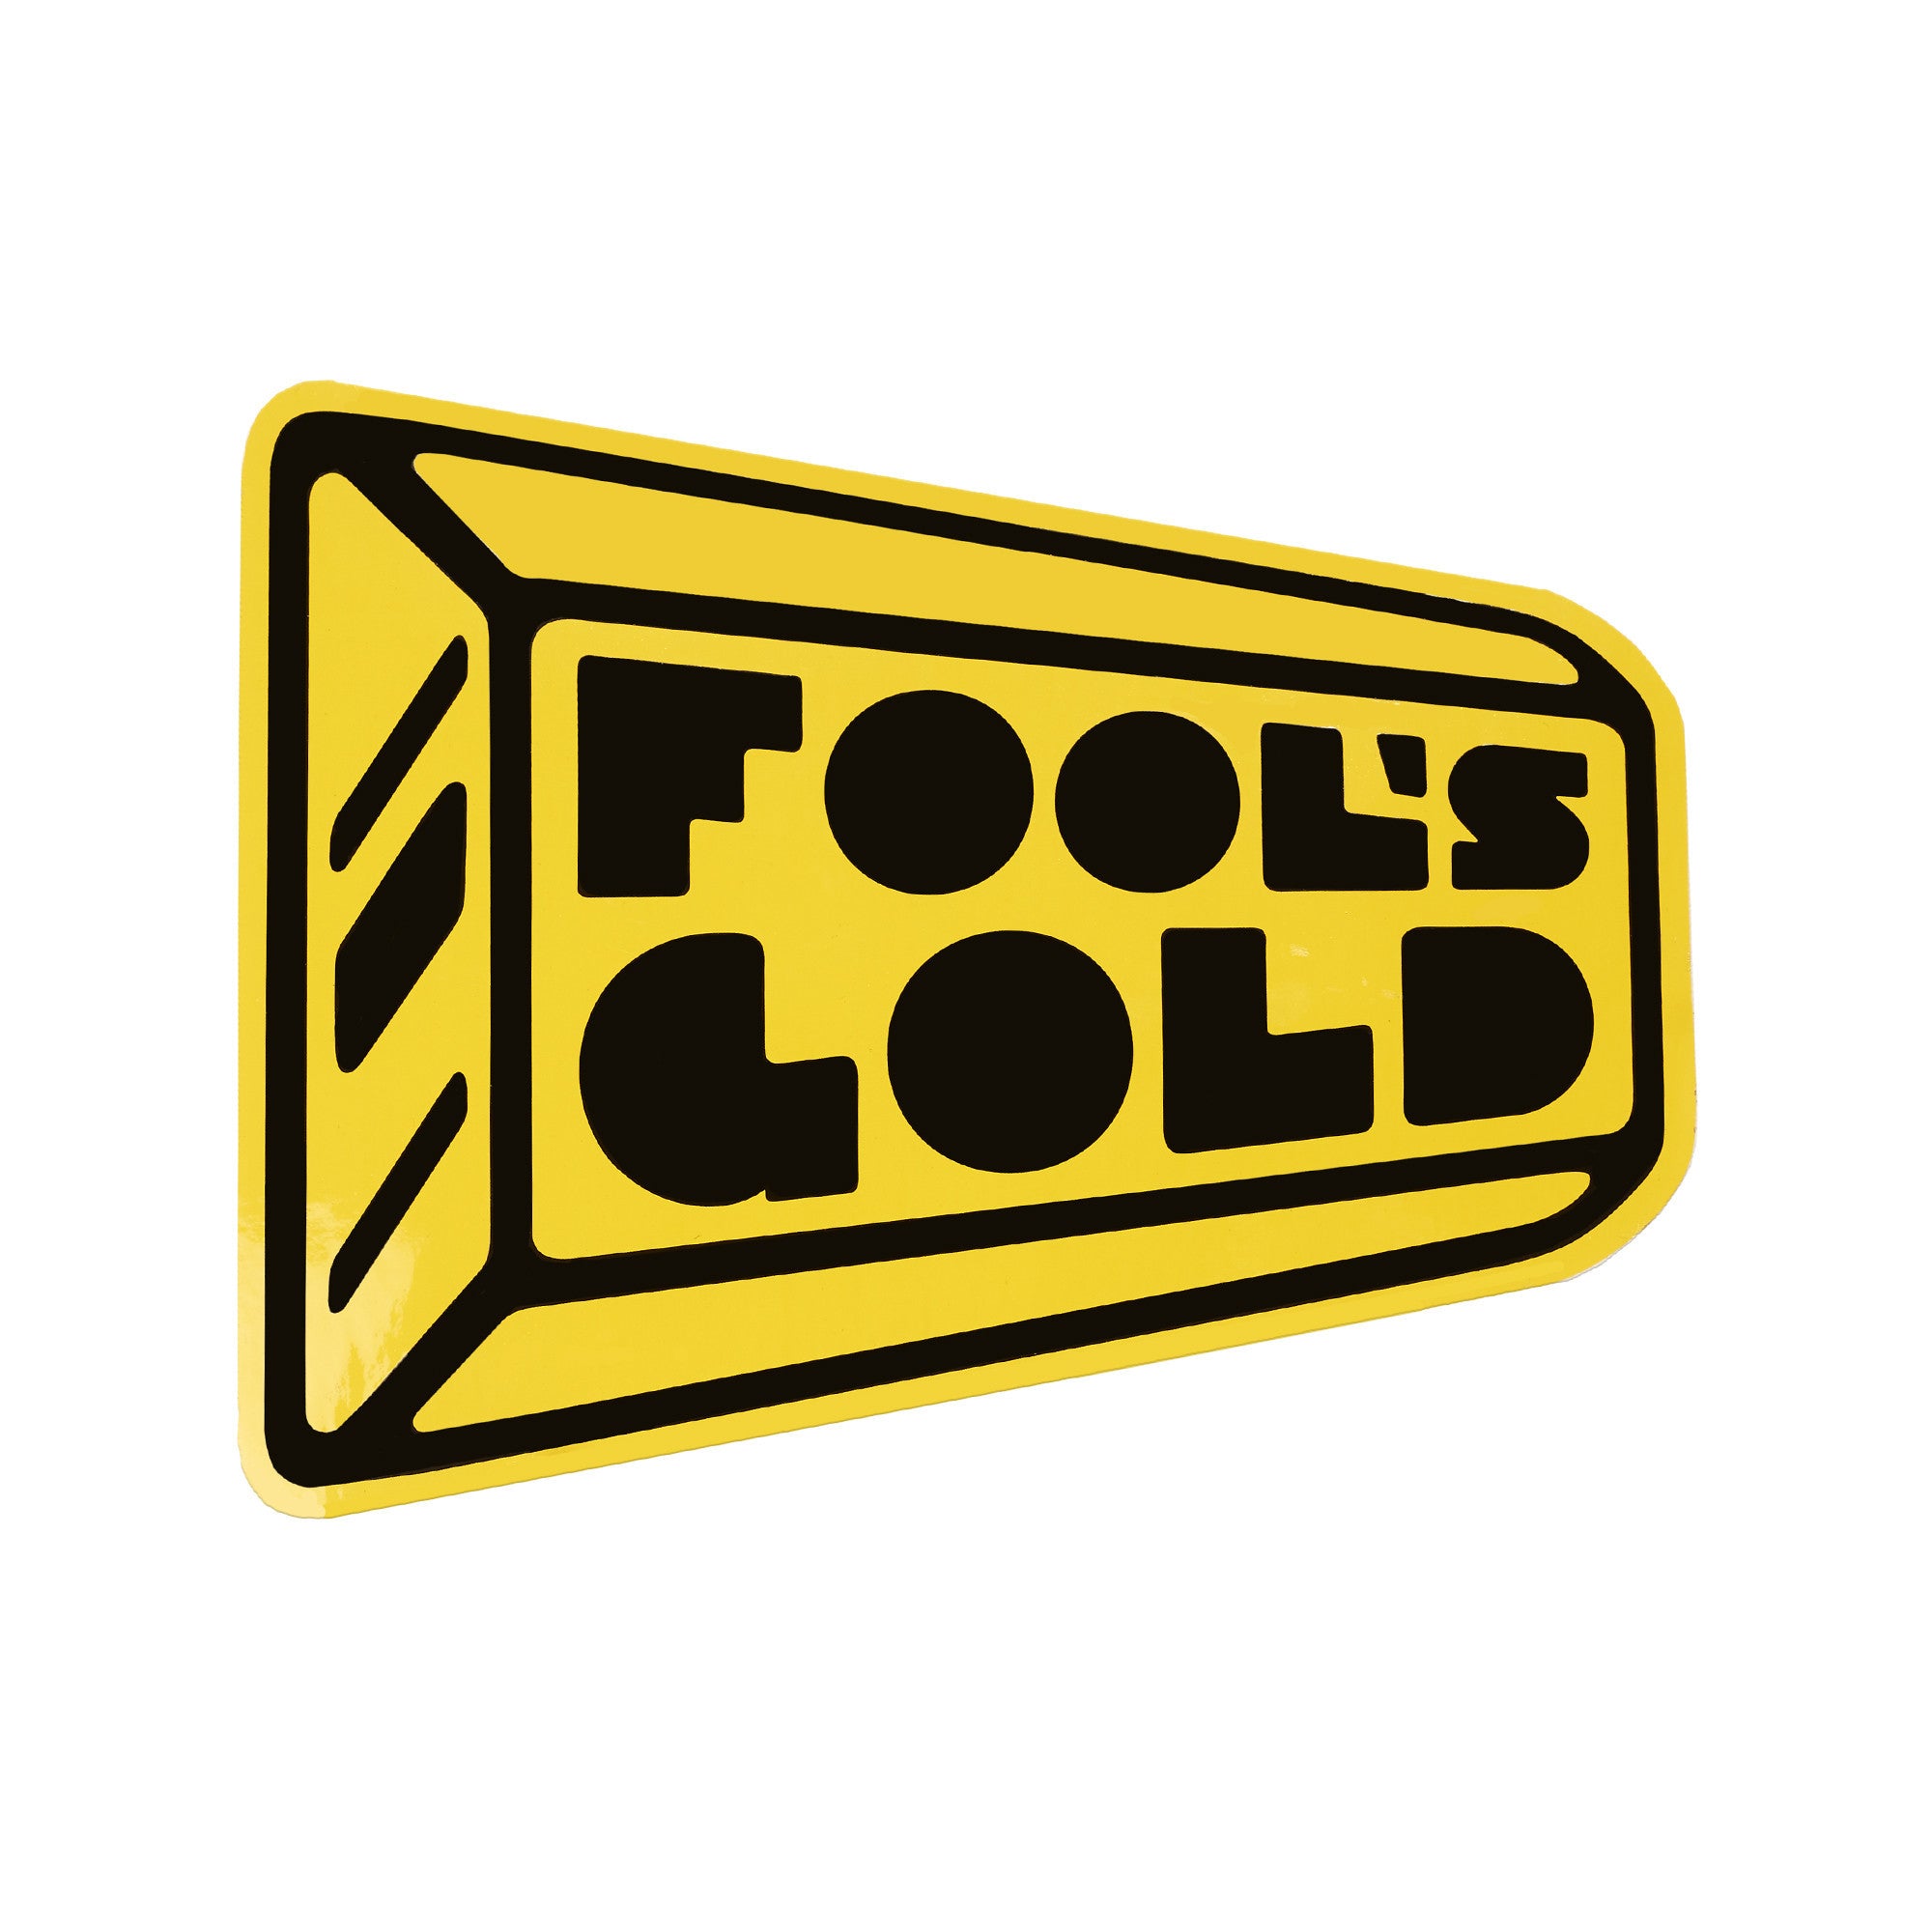 Fool’s Gold “Big Ass Logo” Sticker